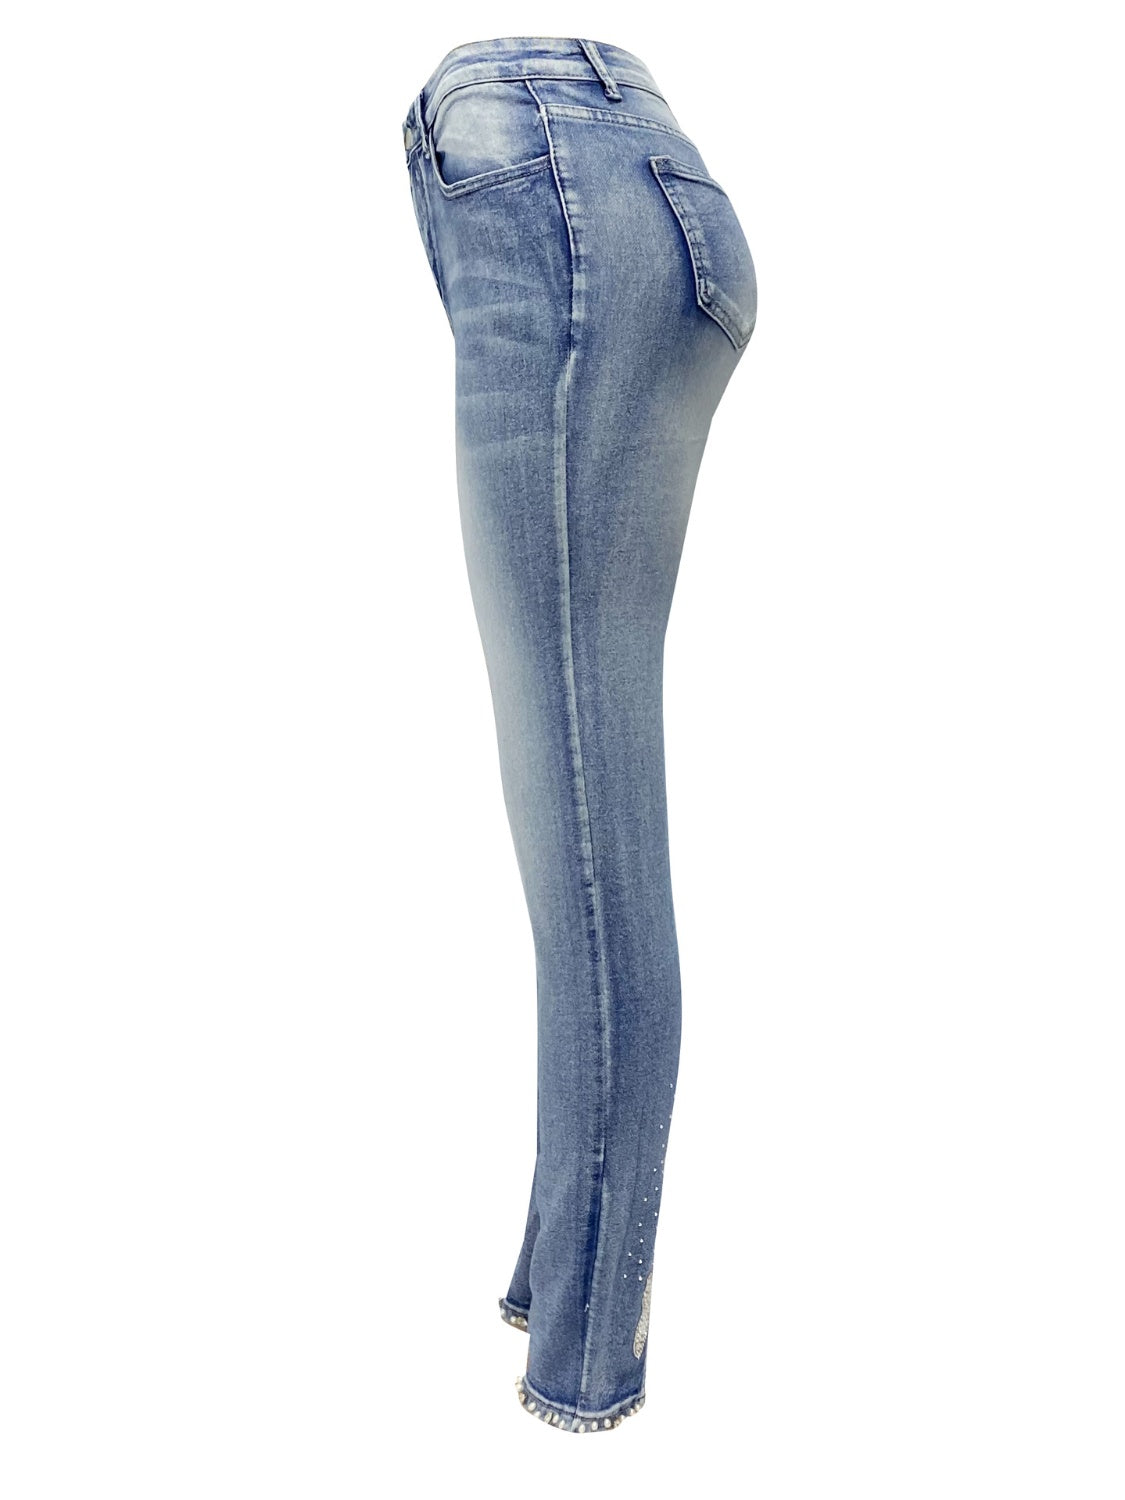 Rhinestone Skinny Jeans with Pockets - Thandynie